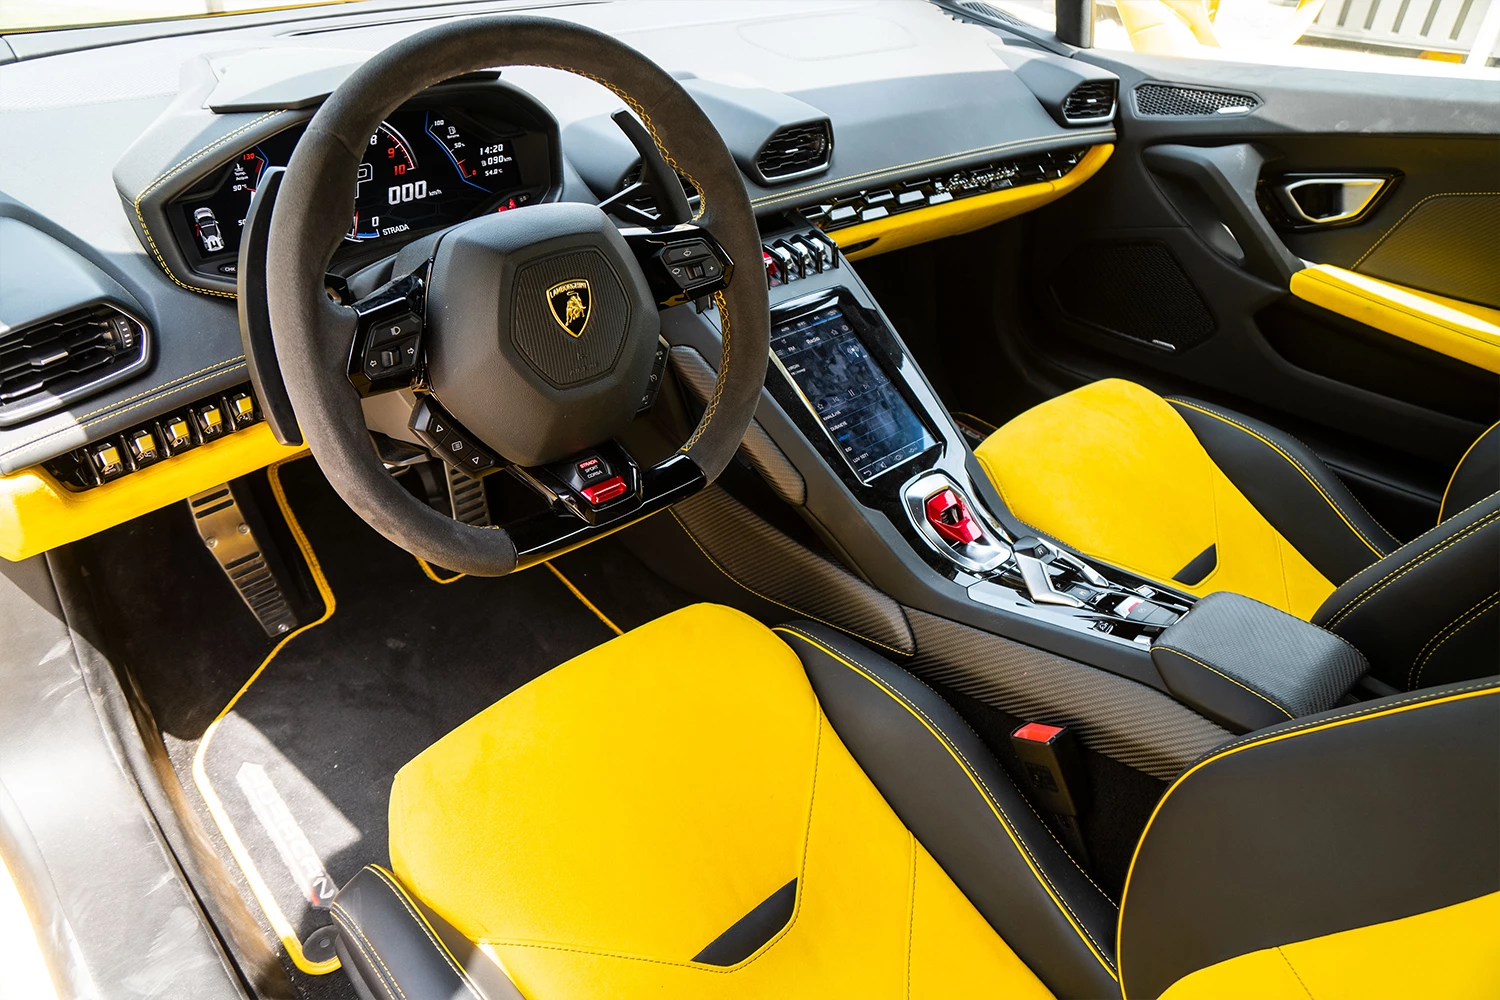 Lamborghini Huracan EVO Spyder Yellow